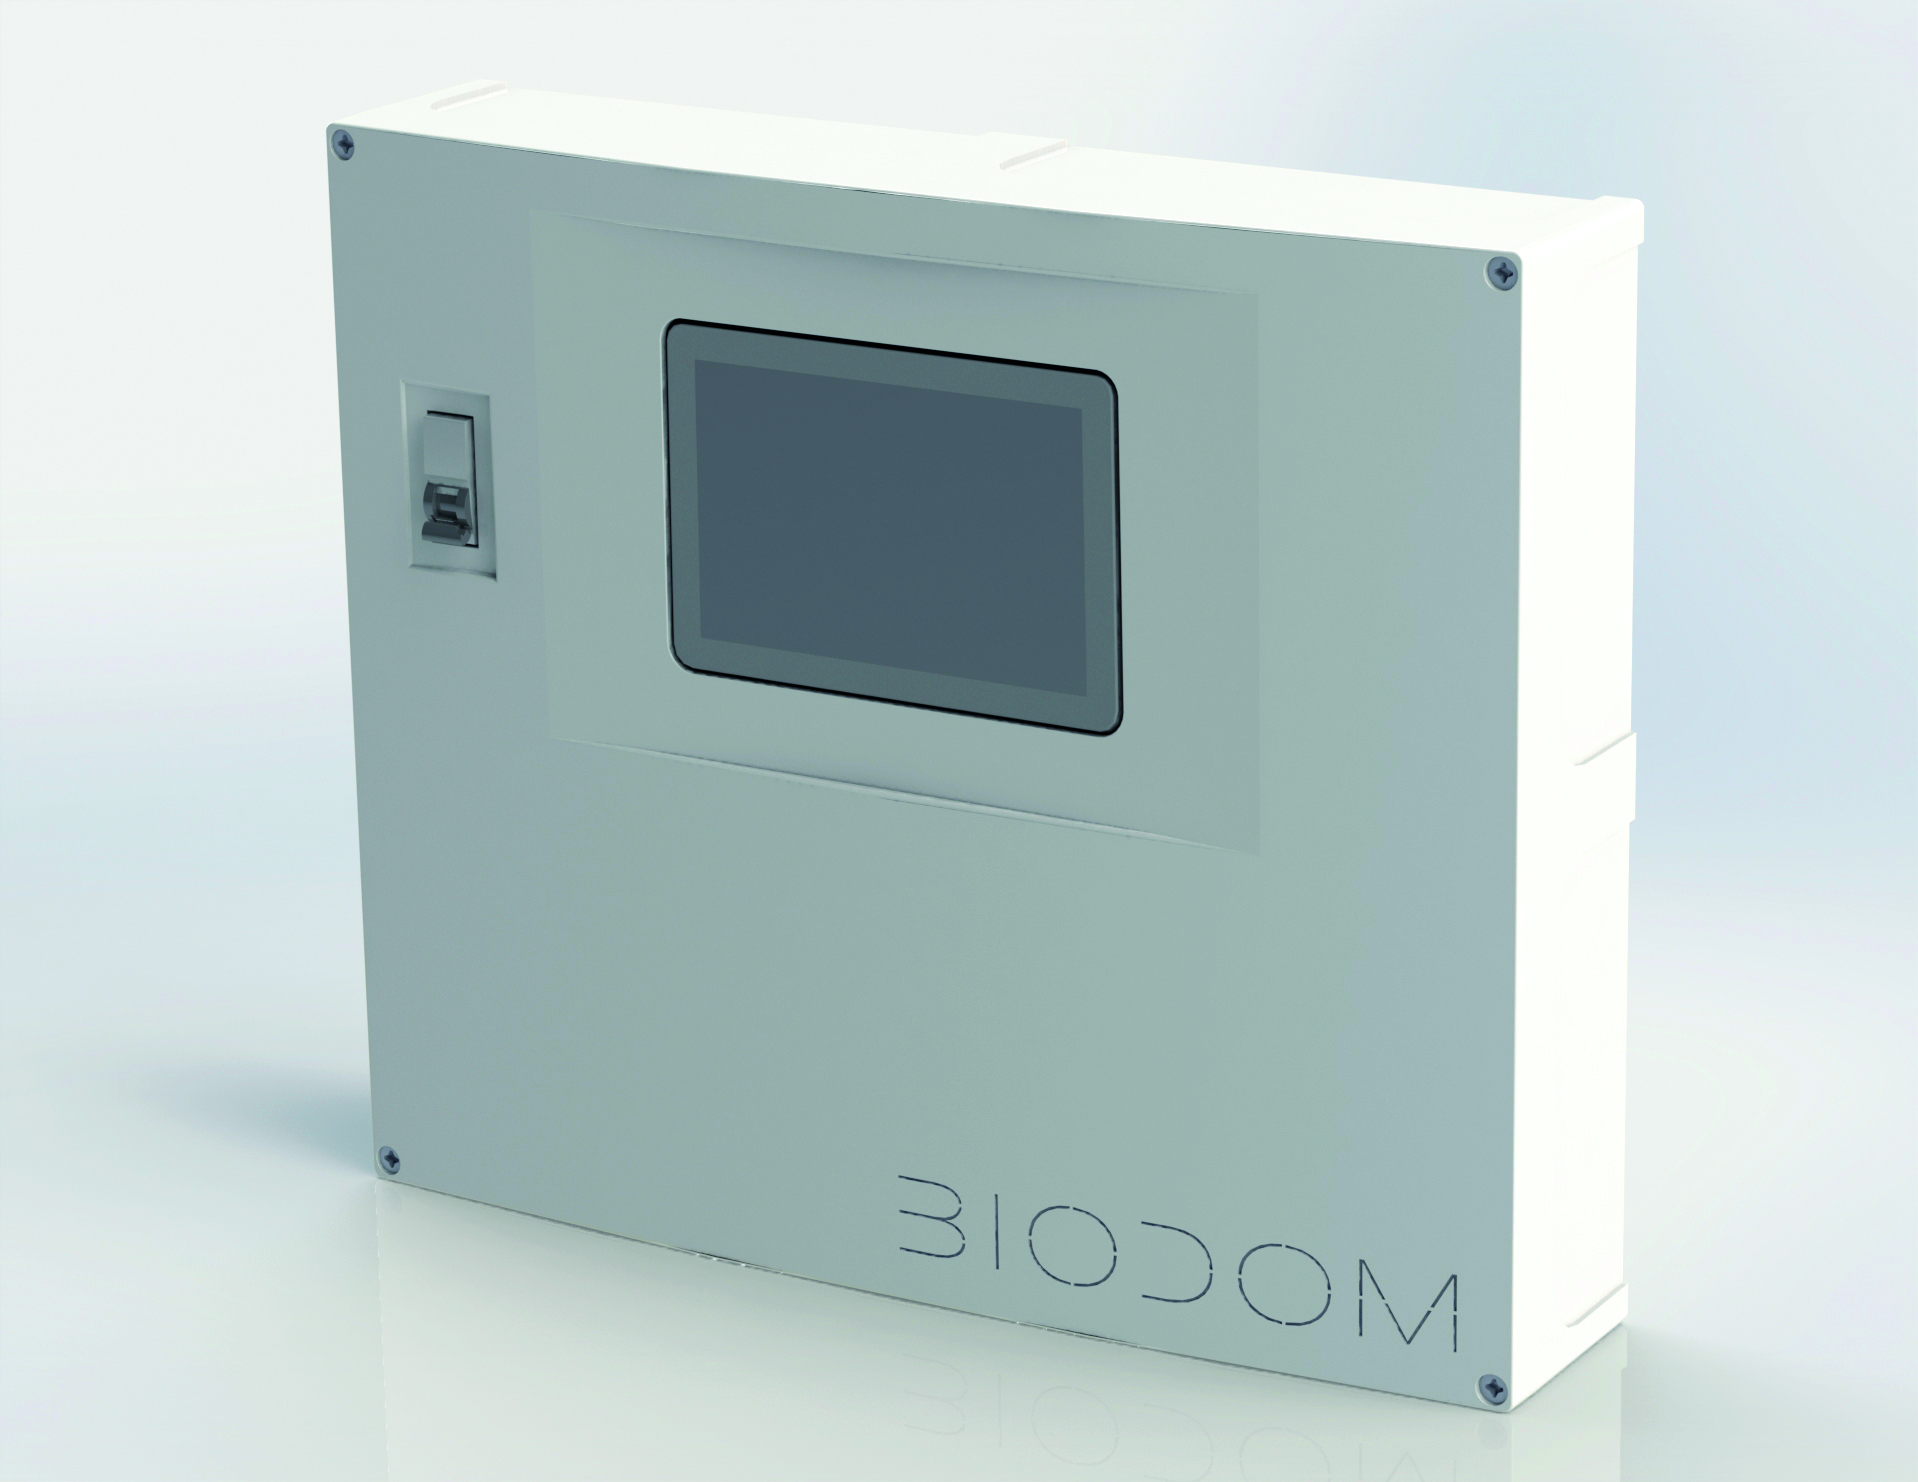 Controller IQ2 van Biodom